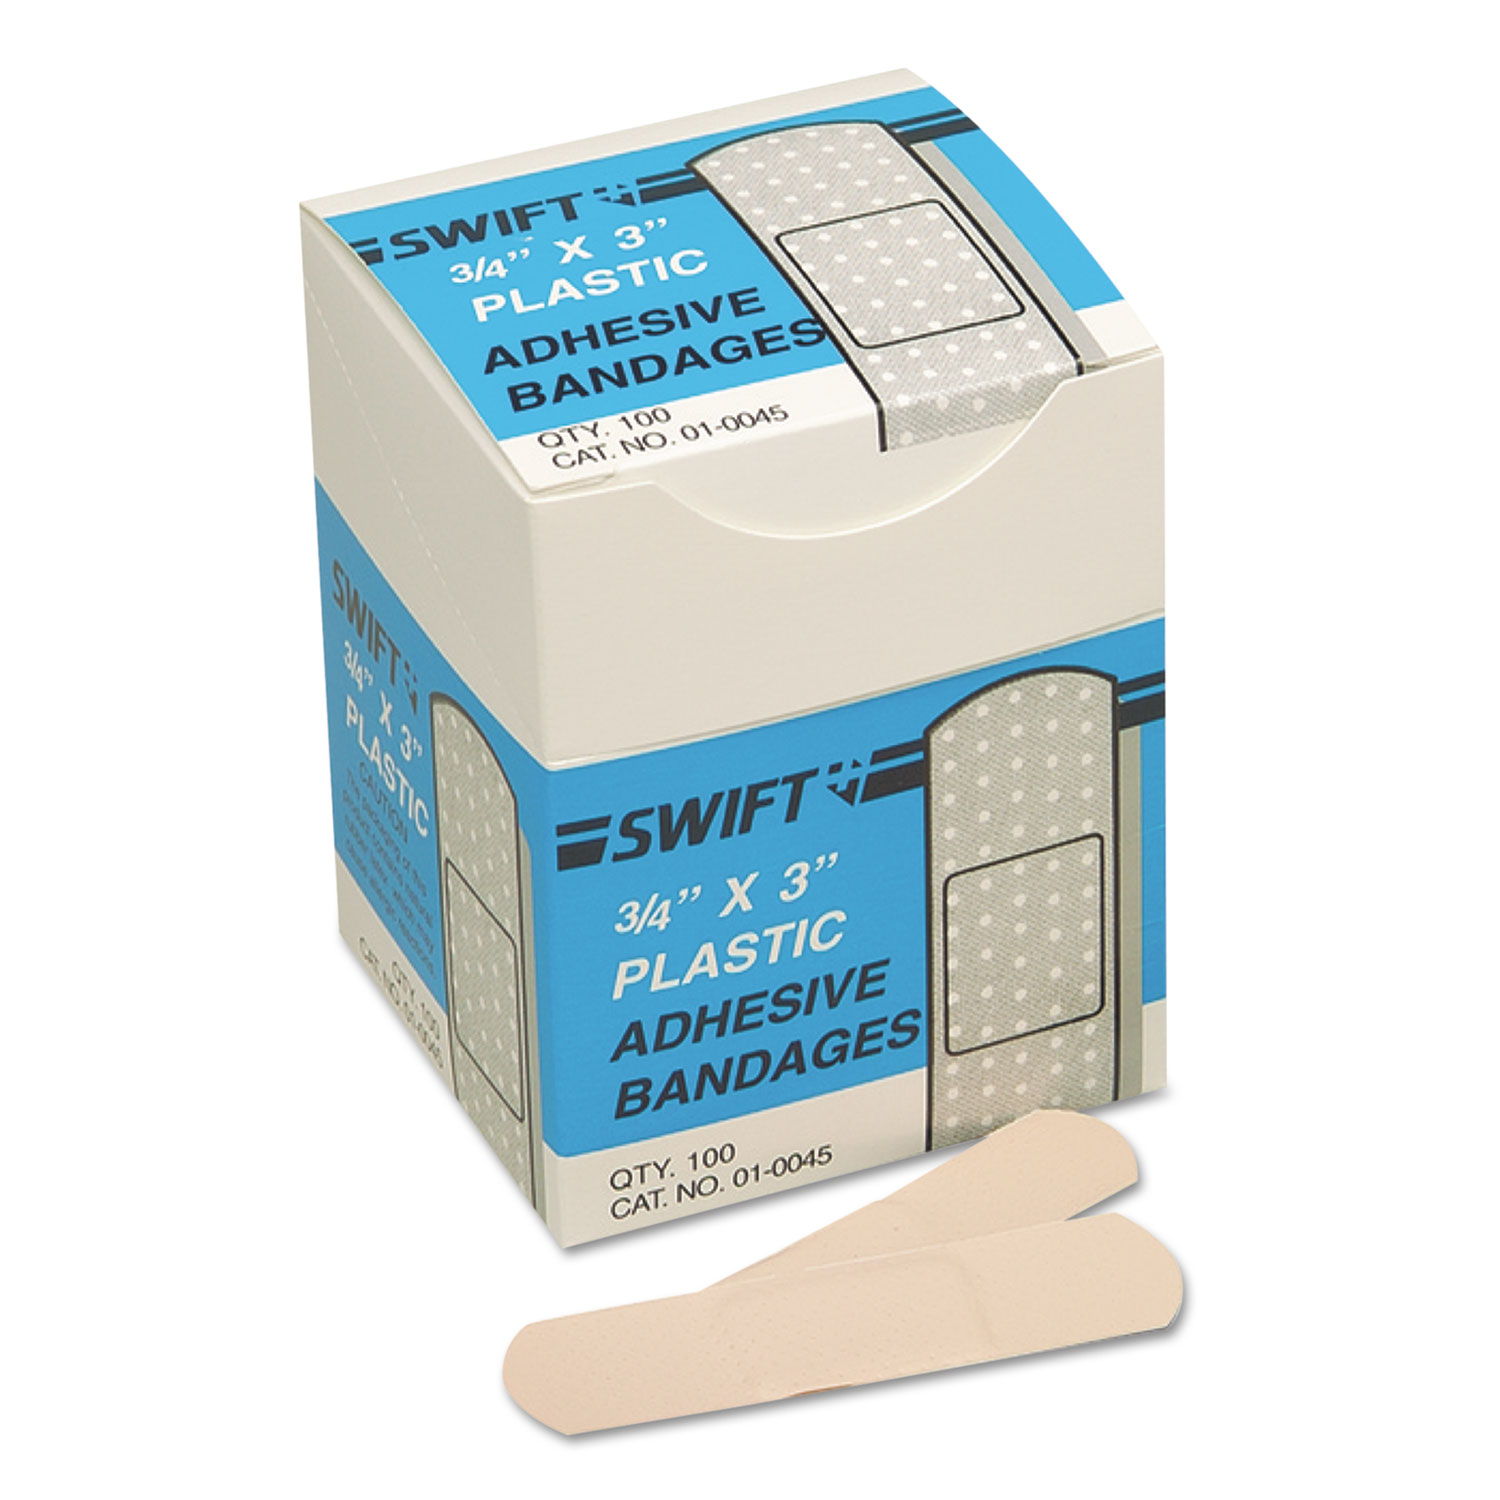 Adhesive Bandages, 3/4 x 3, Plastic